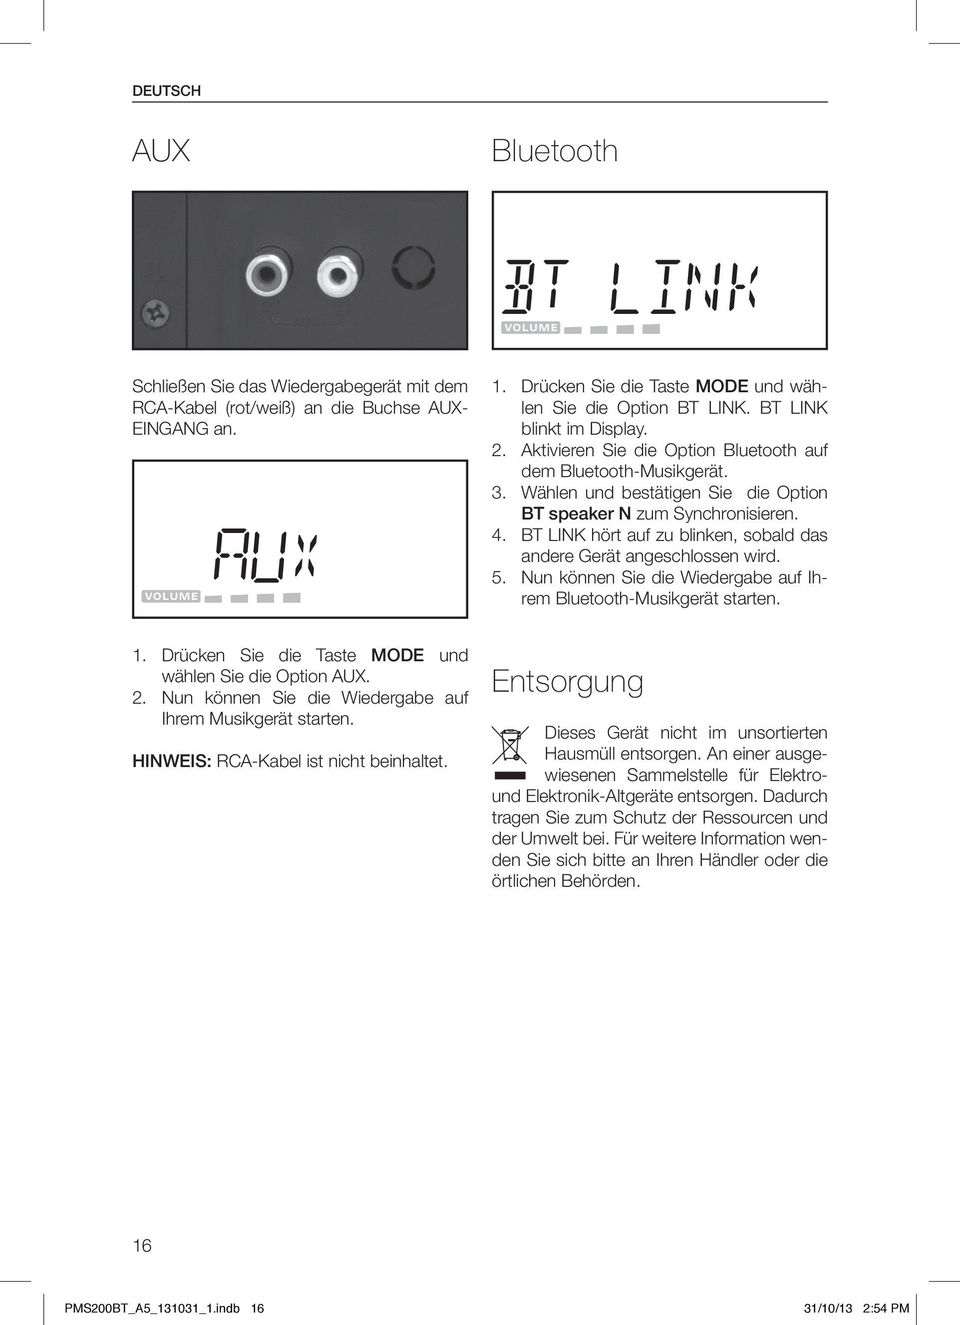 BT LINK hört auf zu blinken, sobald das andere Gerät angeschlossen wird. 5. Nun können Sie die Wiedergabe auf Ihrem Bluetooth-Musikgerät starten. 1.